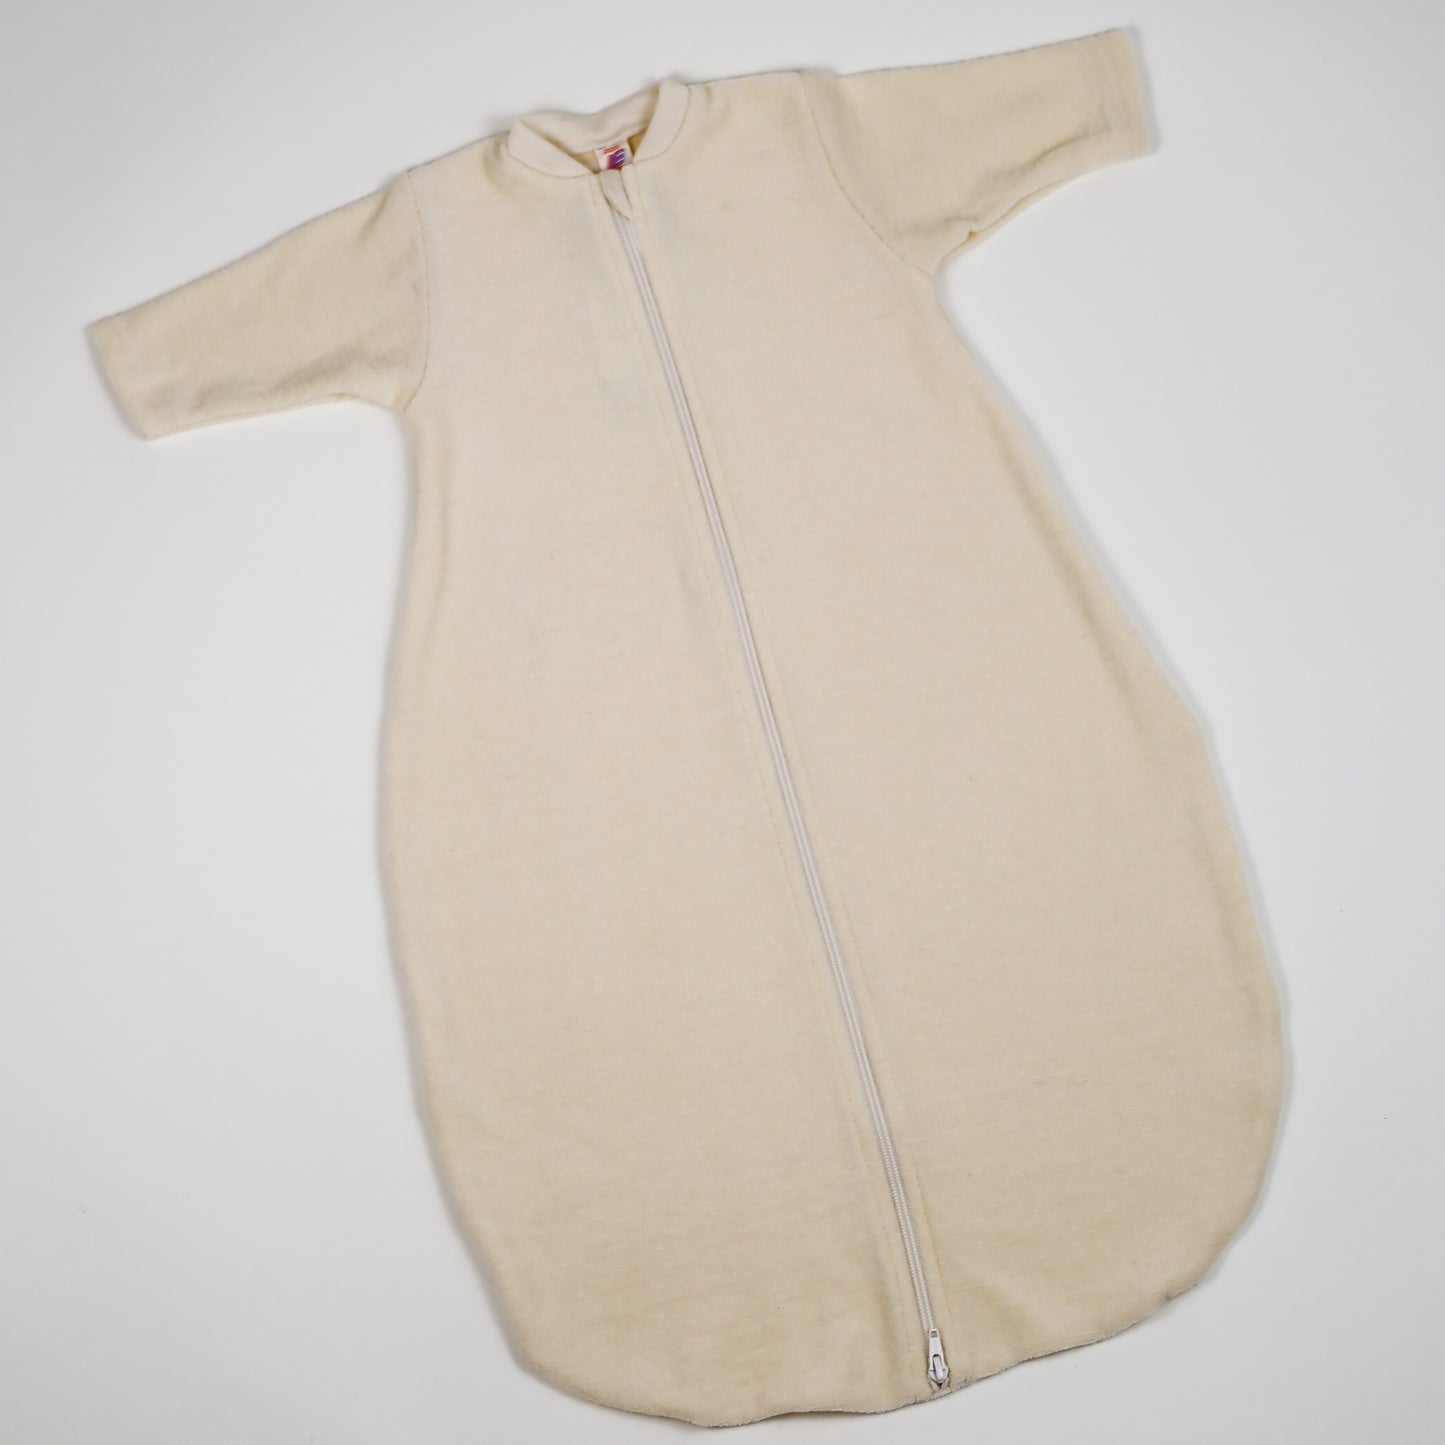 Engel Sac de couchage pour bébé/tout-petit avec fermeture éclair, sans –  Warmth and Weather